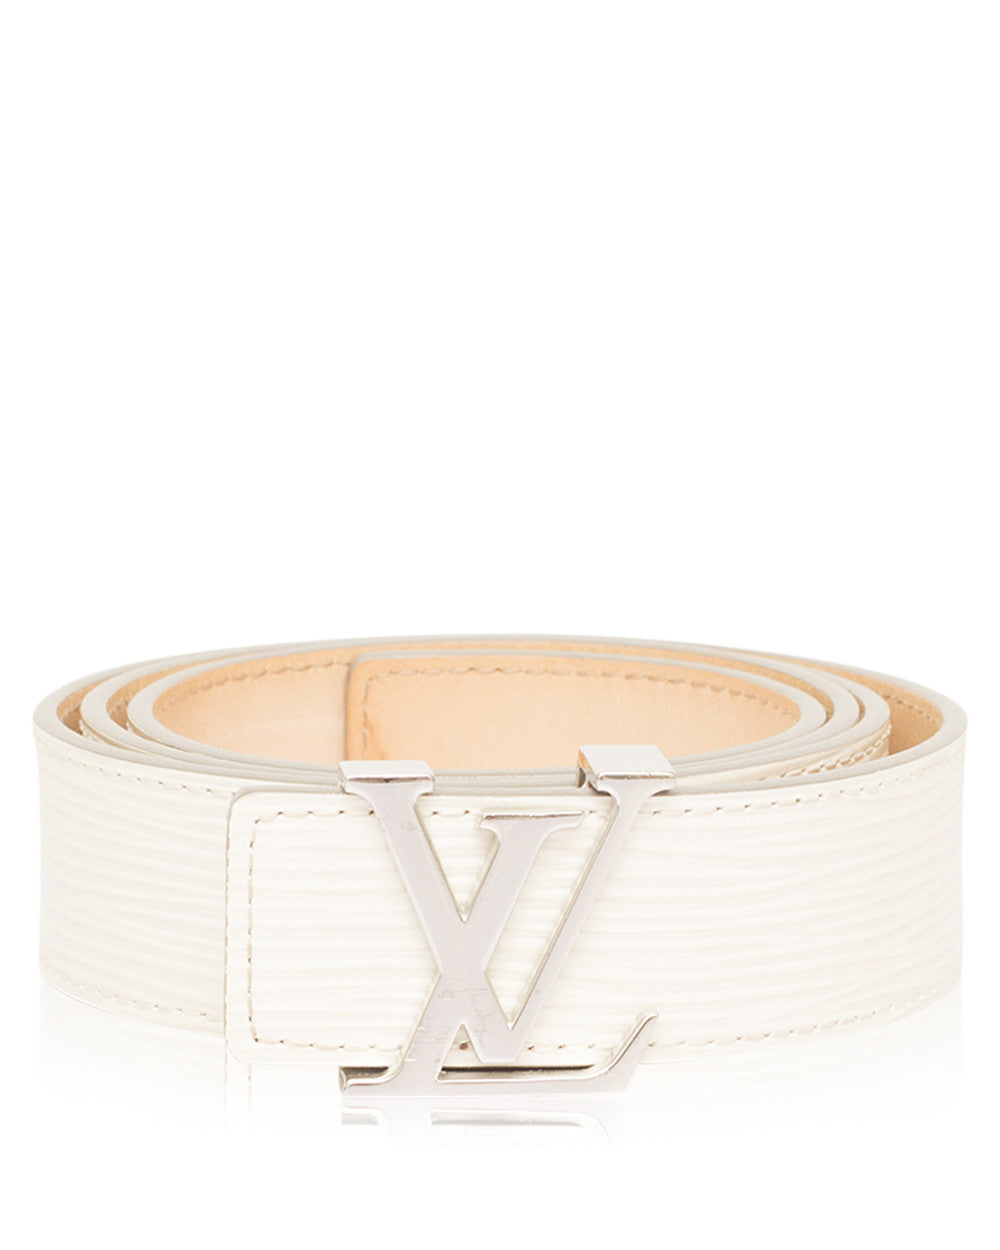 Off White X Louis Vuitton Belt | SEMA Data Co-op